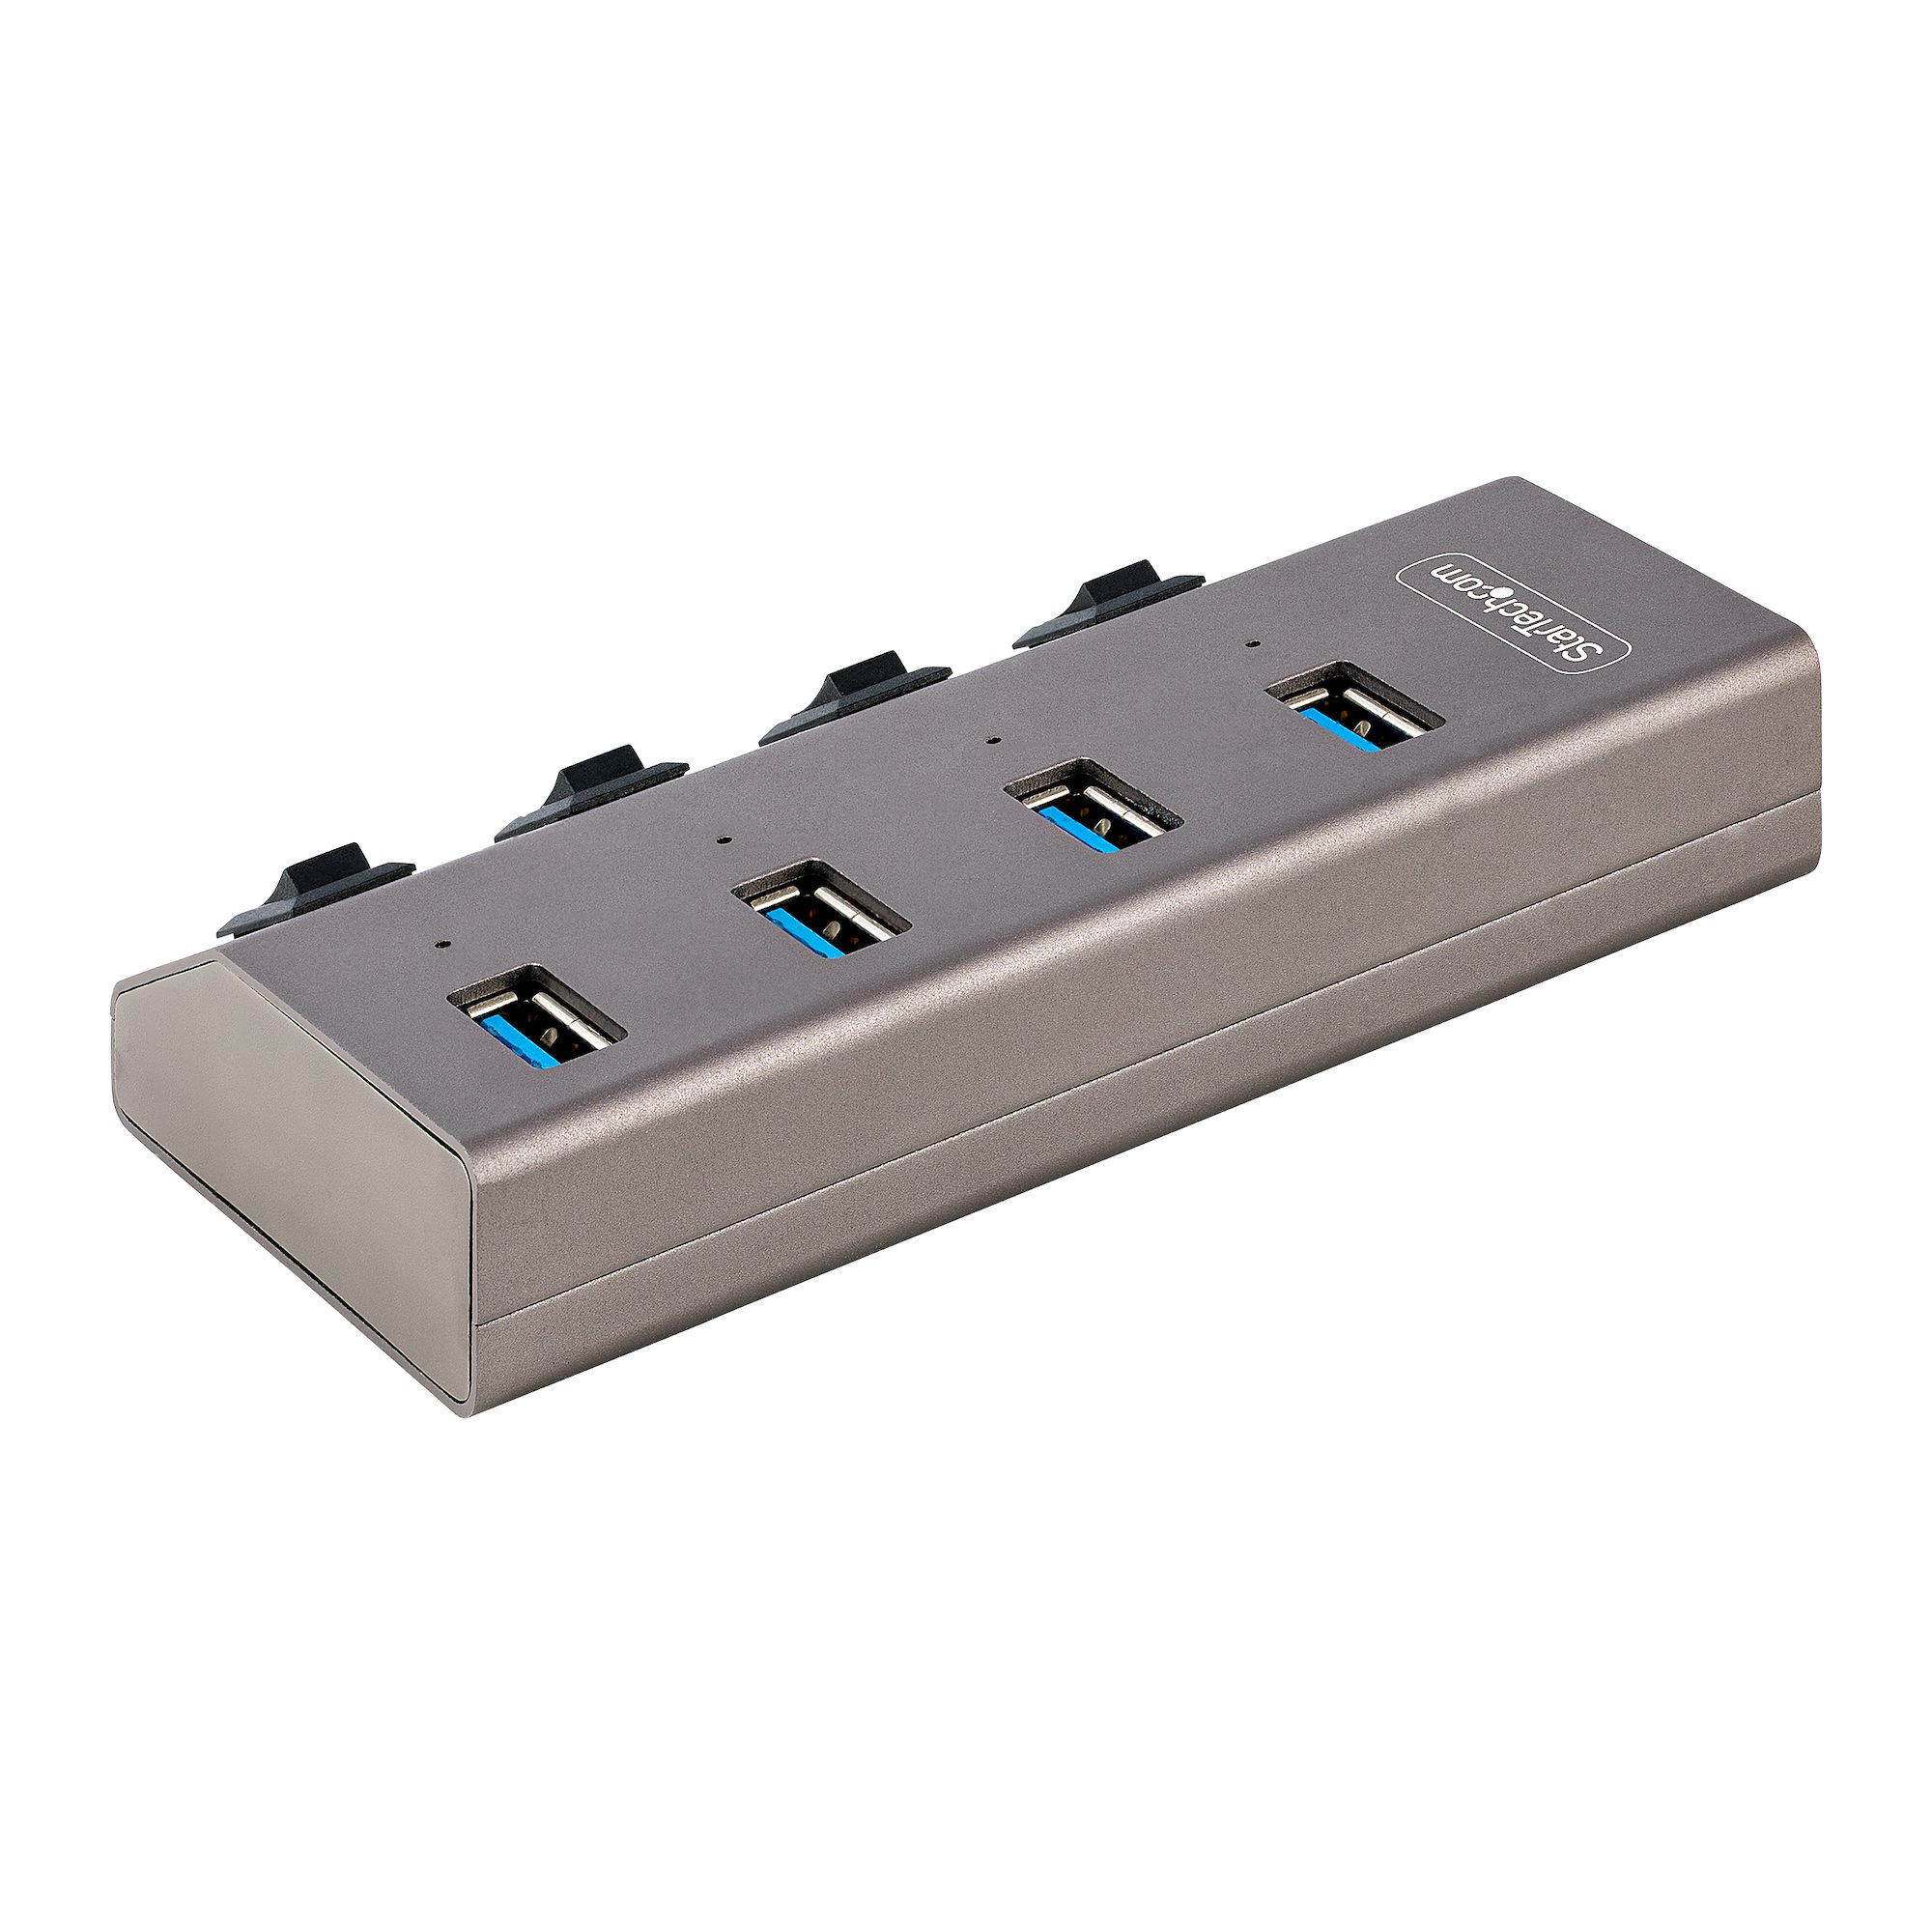 Hub USB-C, hub 7 ports USB-A (4) et USB-C (3), fonction de charge (BC1.2), alimentation  externe (36W), gris sidéral